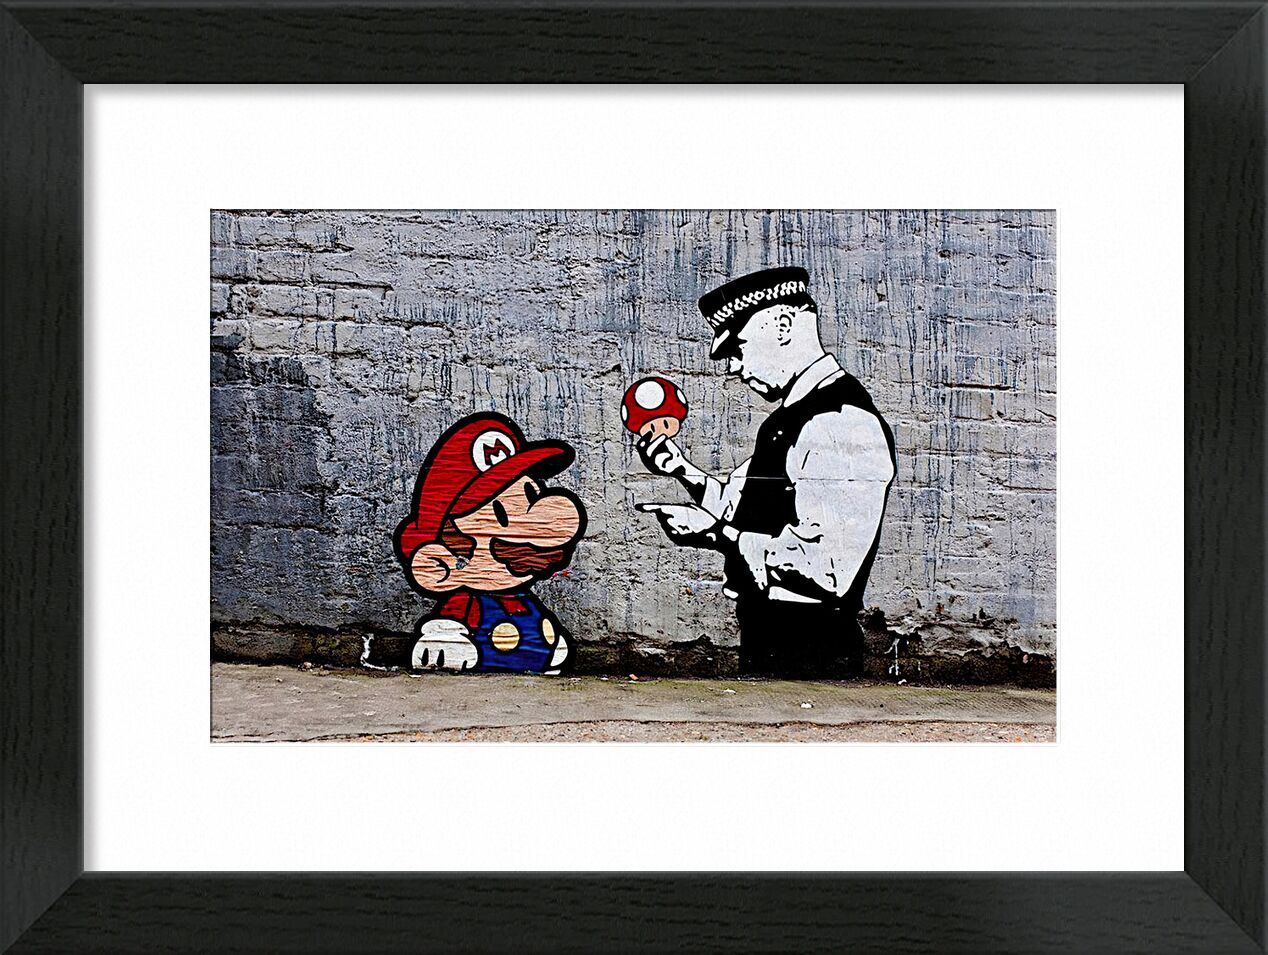 Mario and Cop - Banksy von Bildende Kunst, Prodi Art, banksy, Polizei, Polizist, champignon, Straße, Straßenfoto, Mario